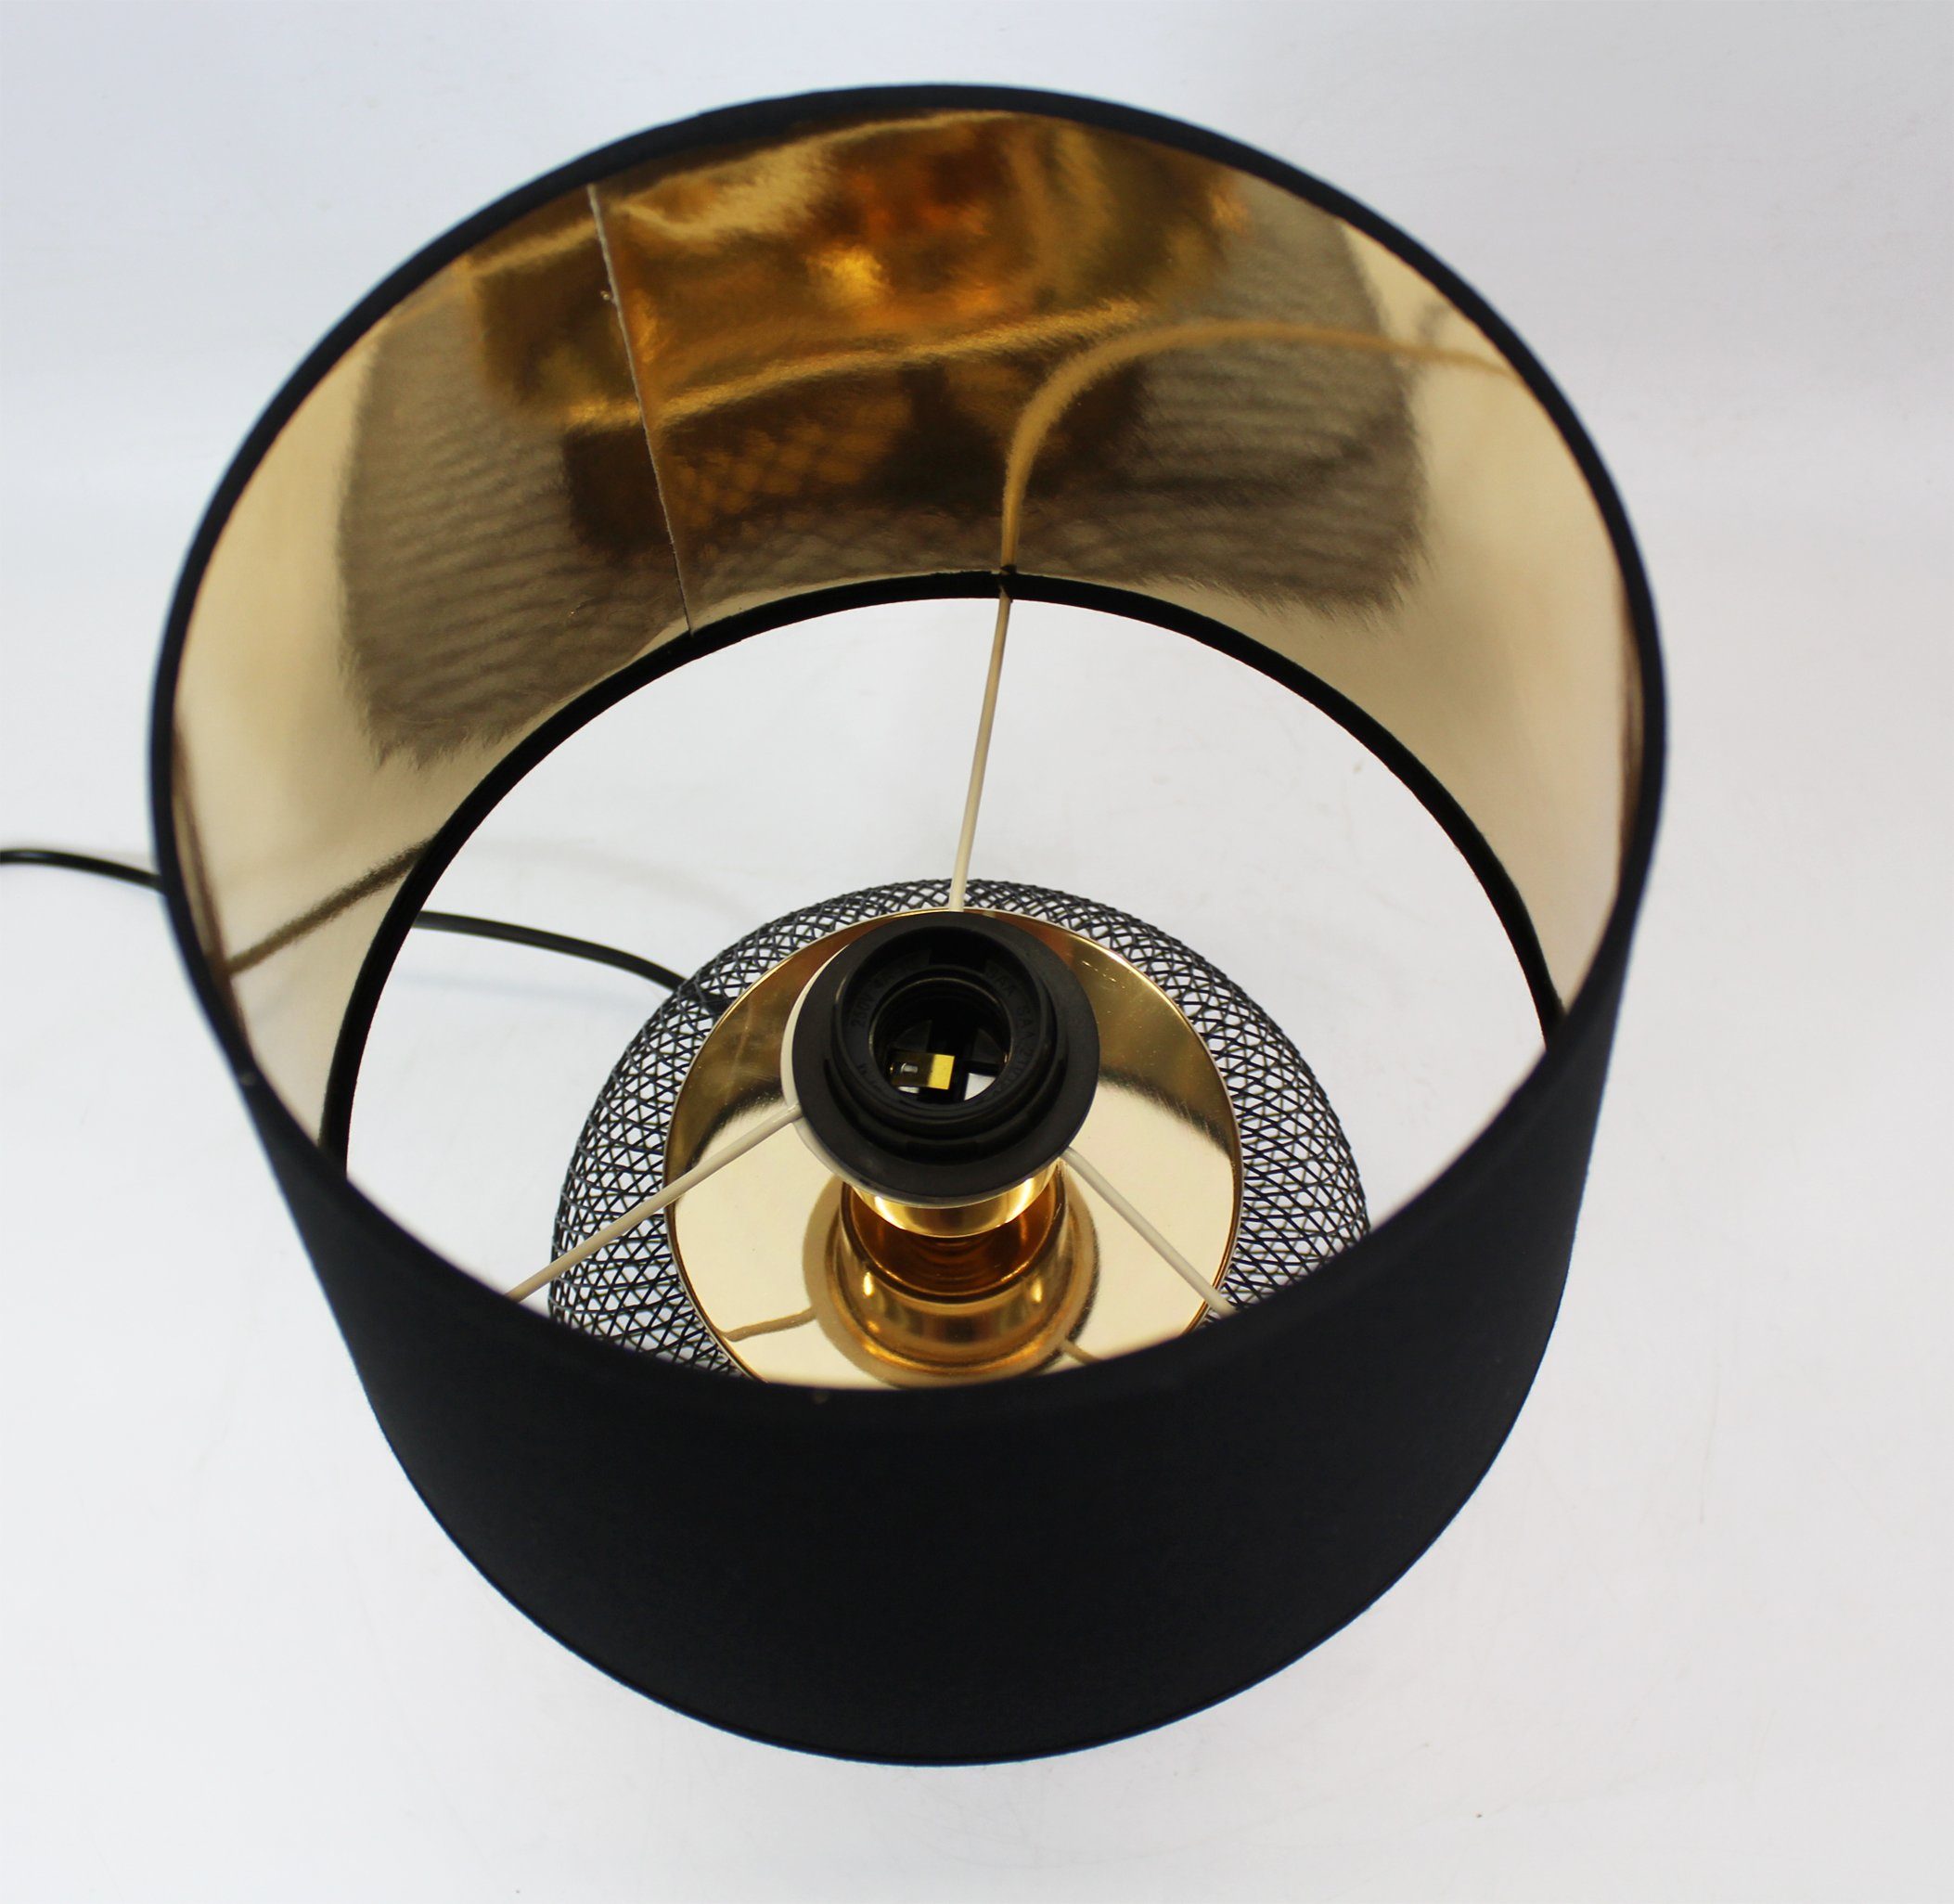 Tischleuchte mit Schirm Tischlampe Leuchtmittel schwarzem schwarz 25x38cm, ohne rund Arnusa gold Metall,